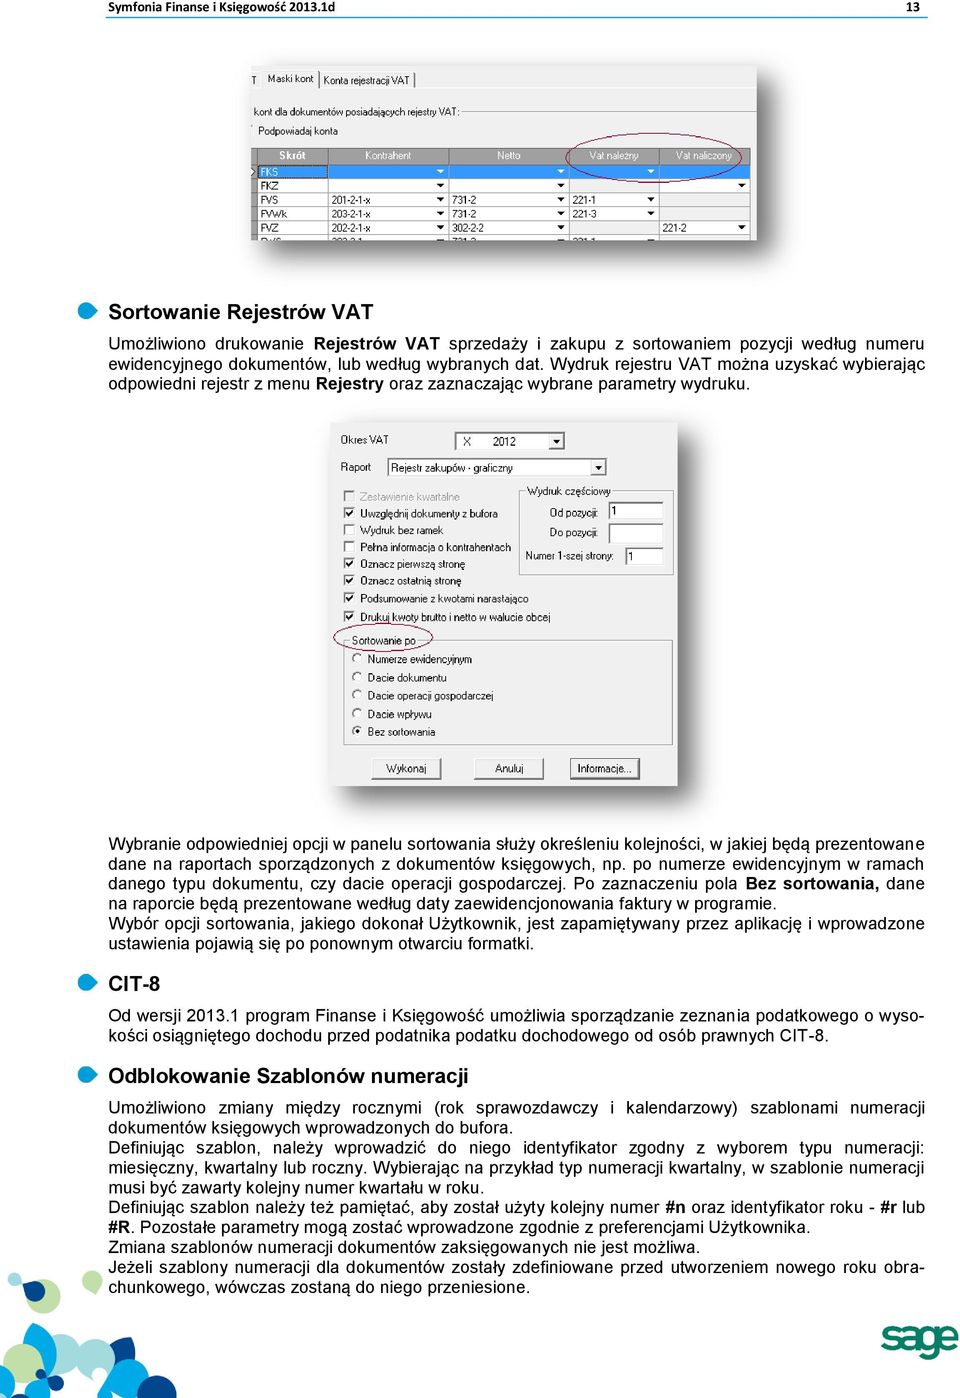 Wydruk rejestru VAT można uzyskać wybierając odpowiedni rejestr z menu Rejestry oraz zaznaczając wybrane parametry wydruku.